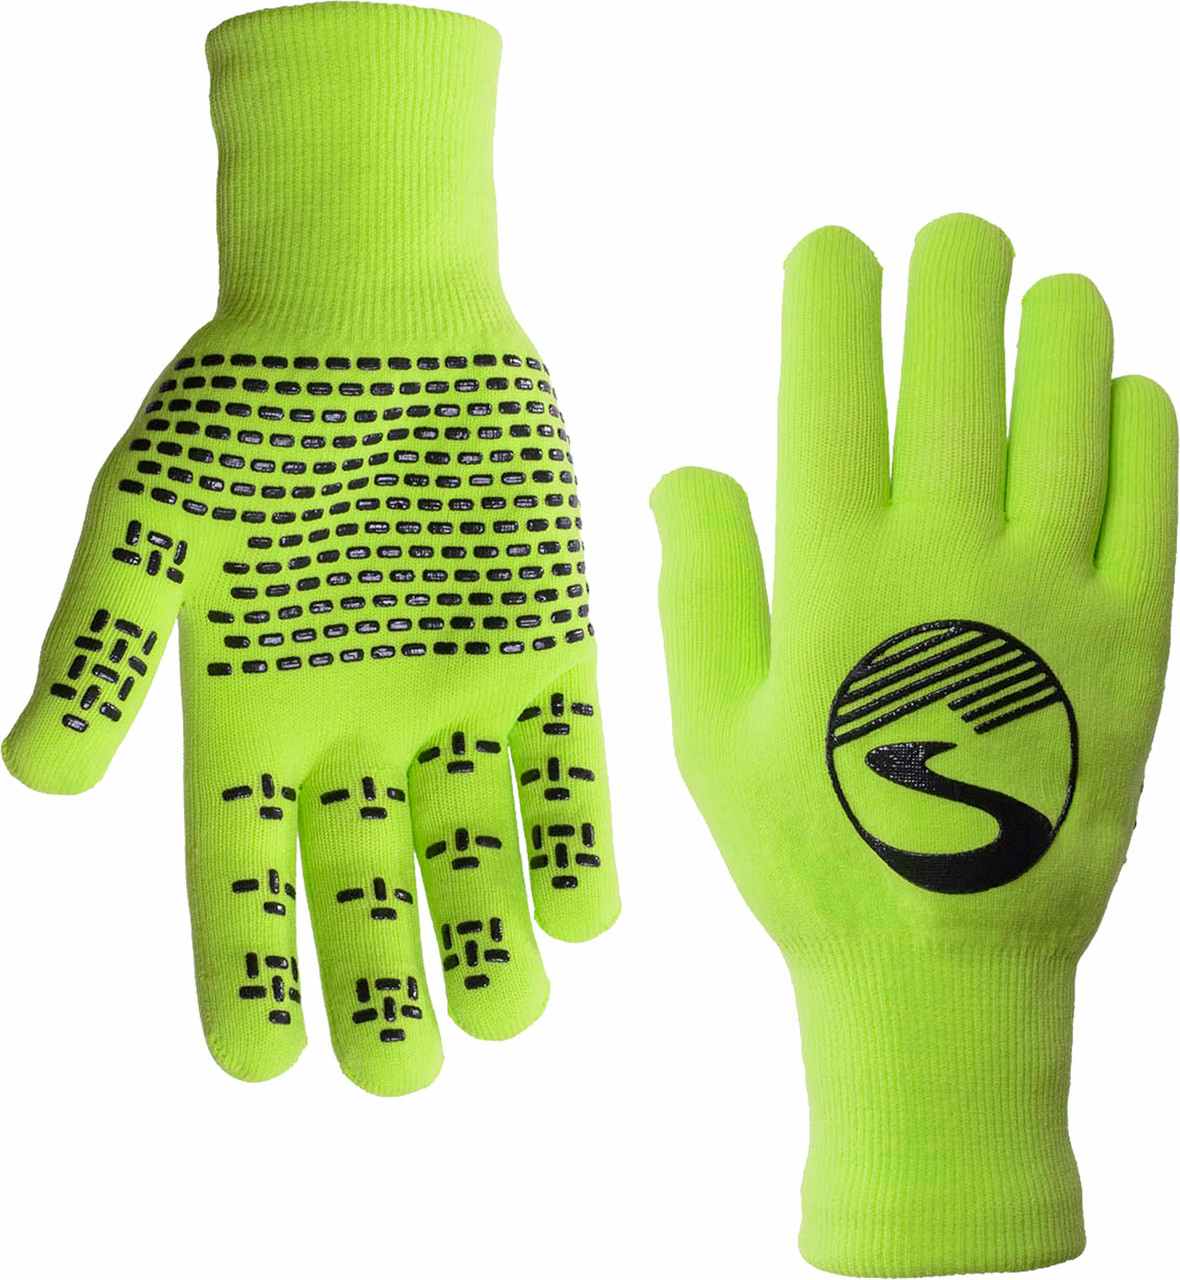 Crosspoint Waterproof Knit Gloves Neon Green